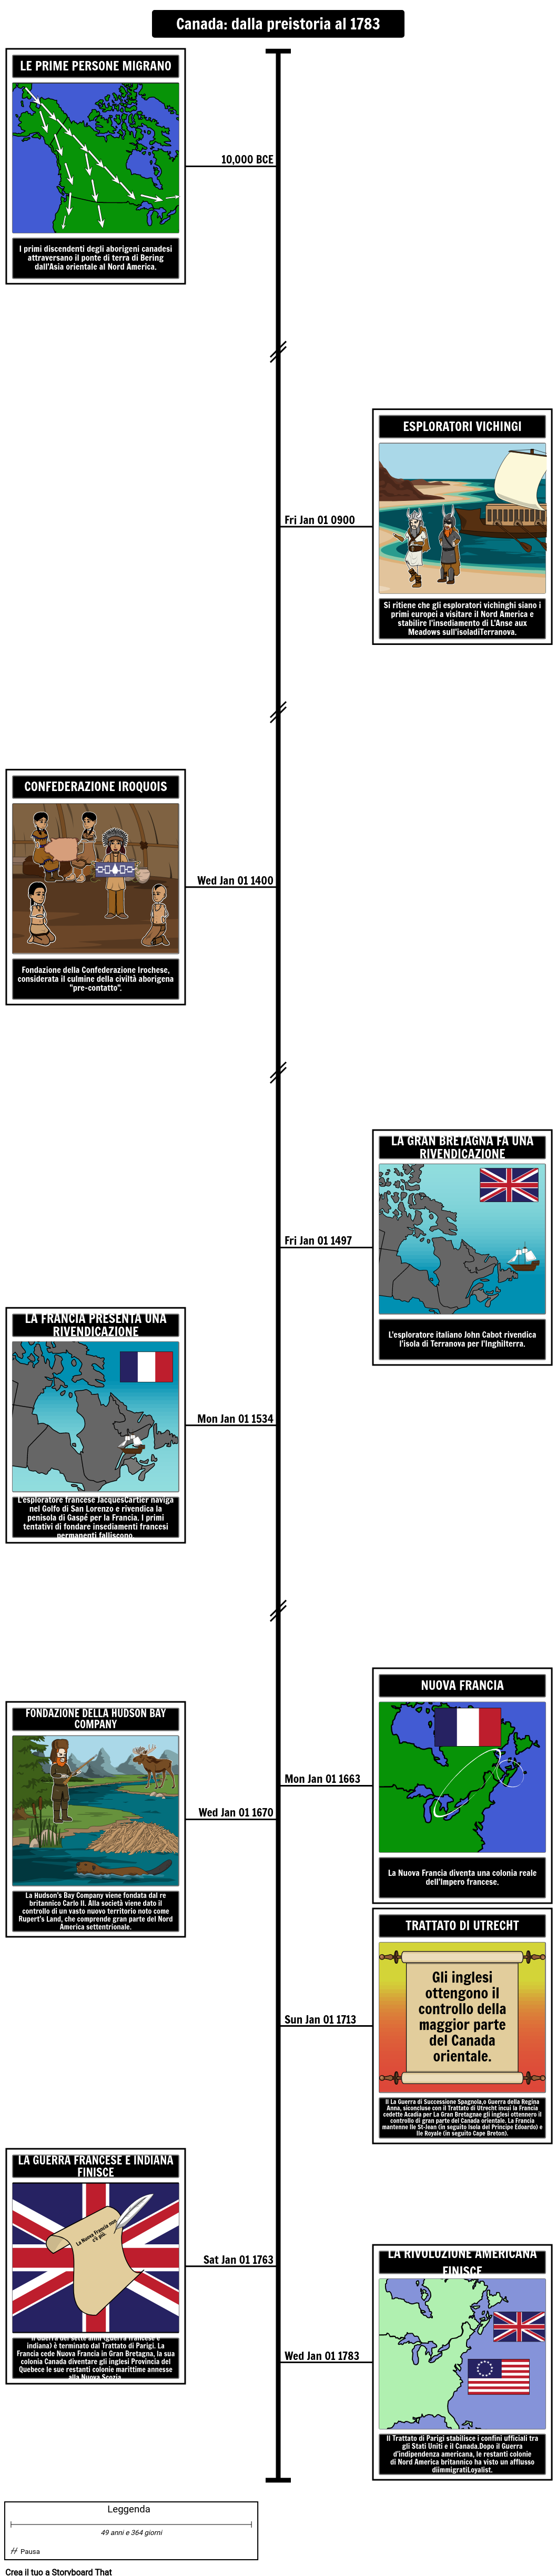 Cronologia della storia canadese dalla preistoria al 1783